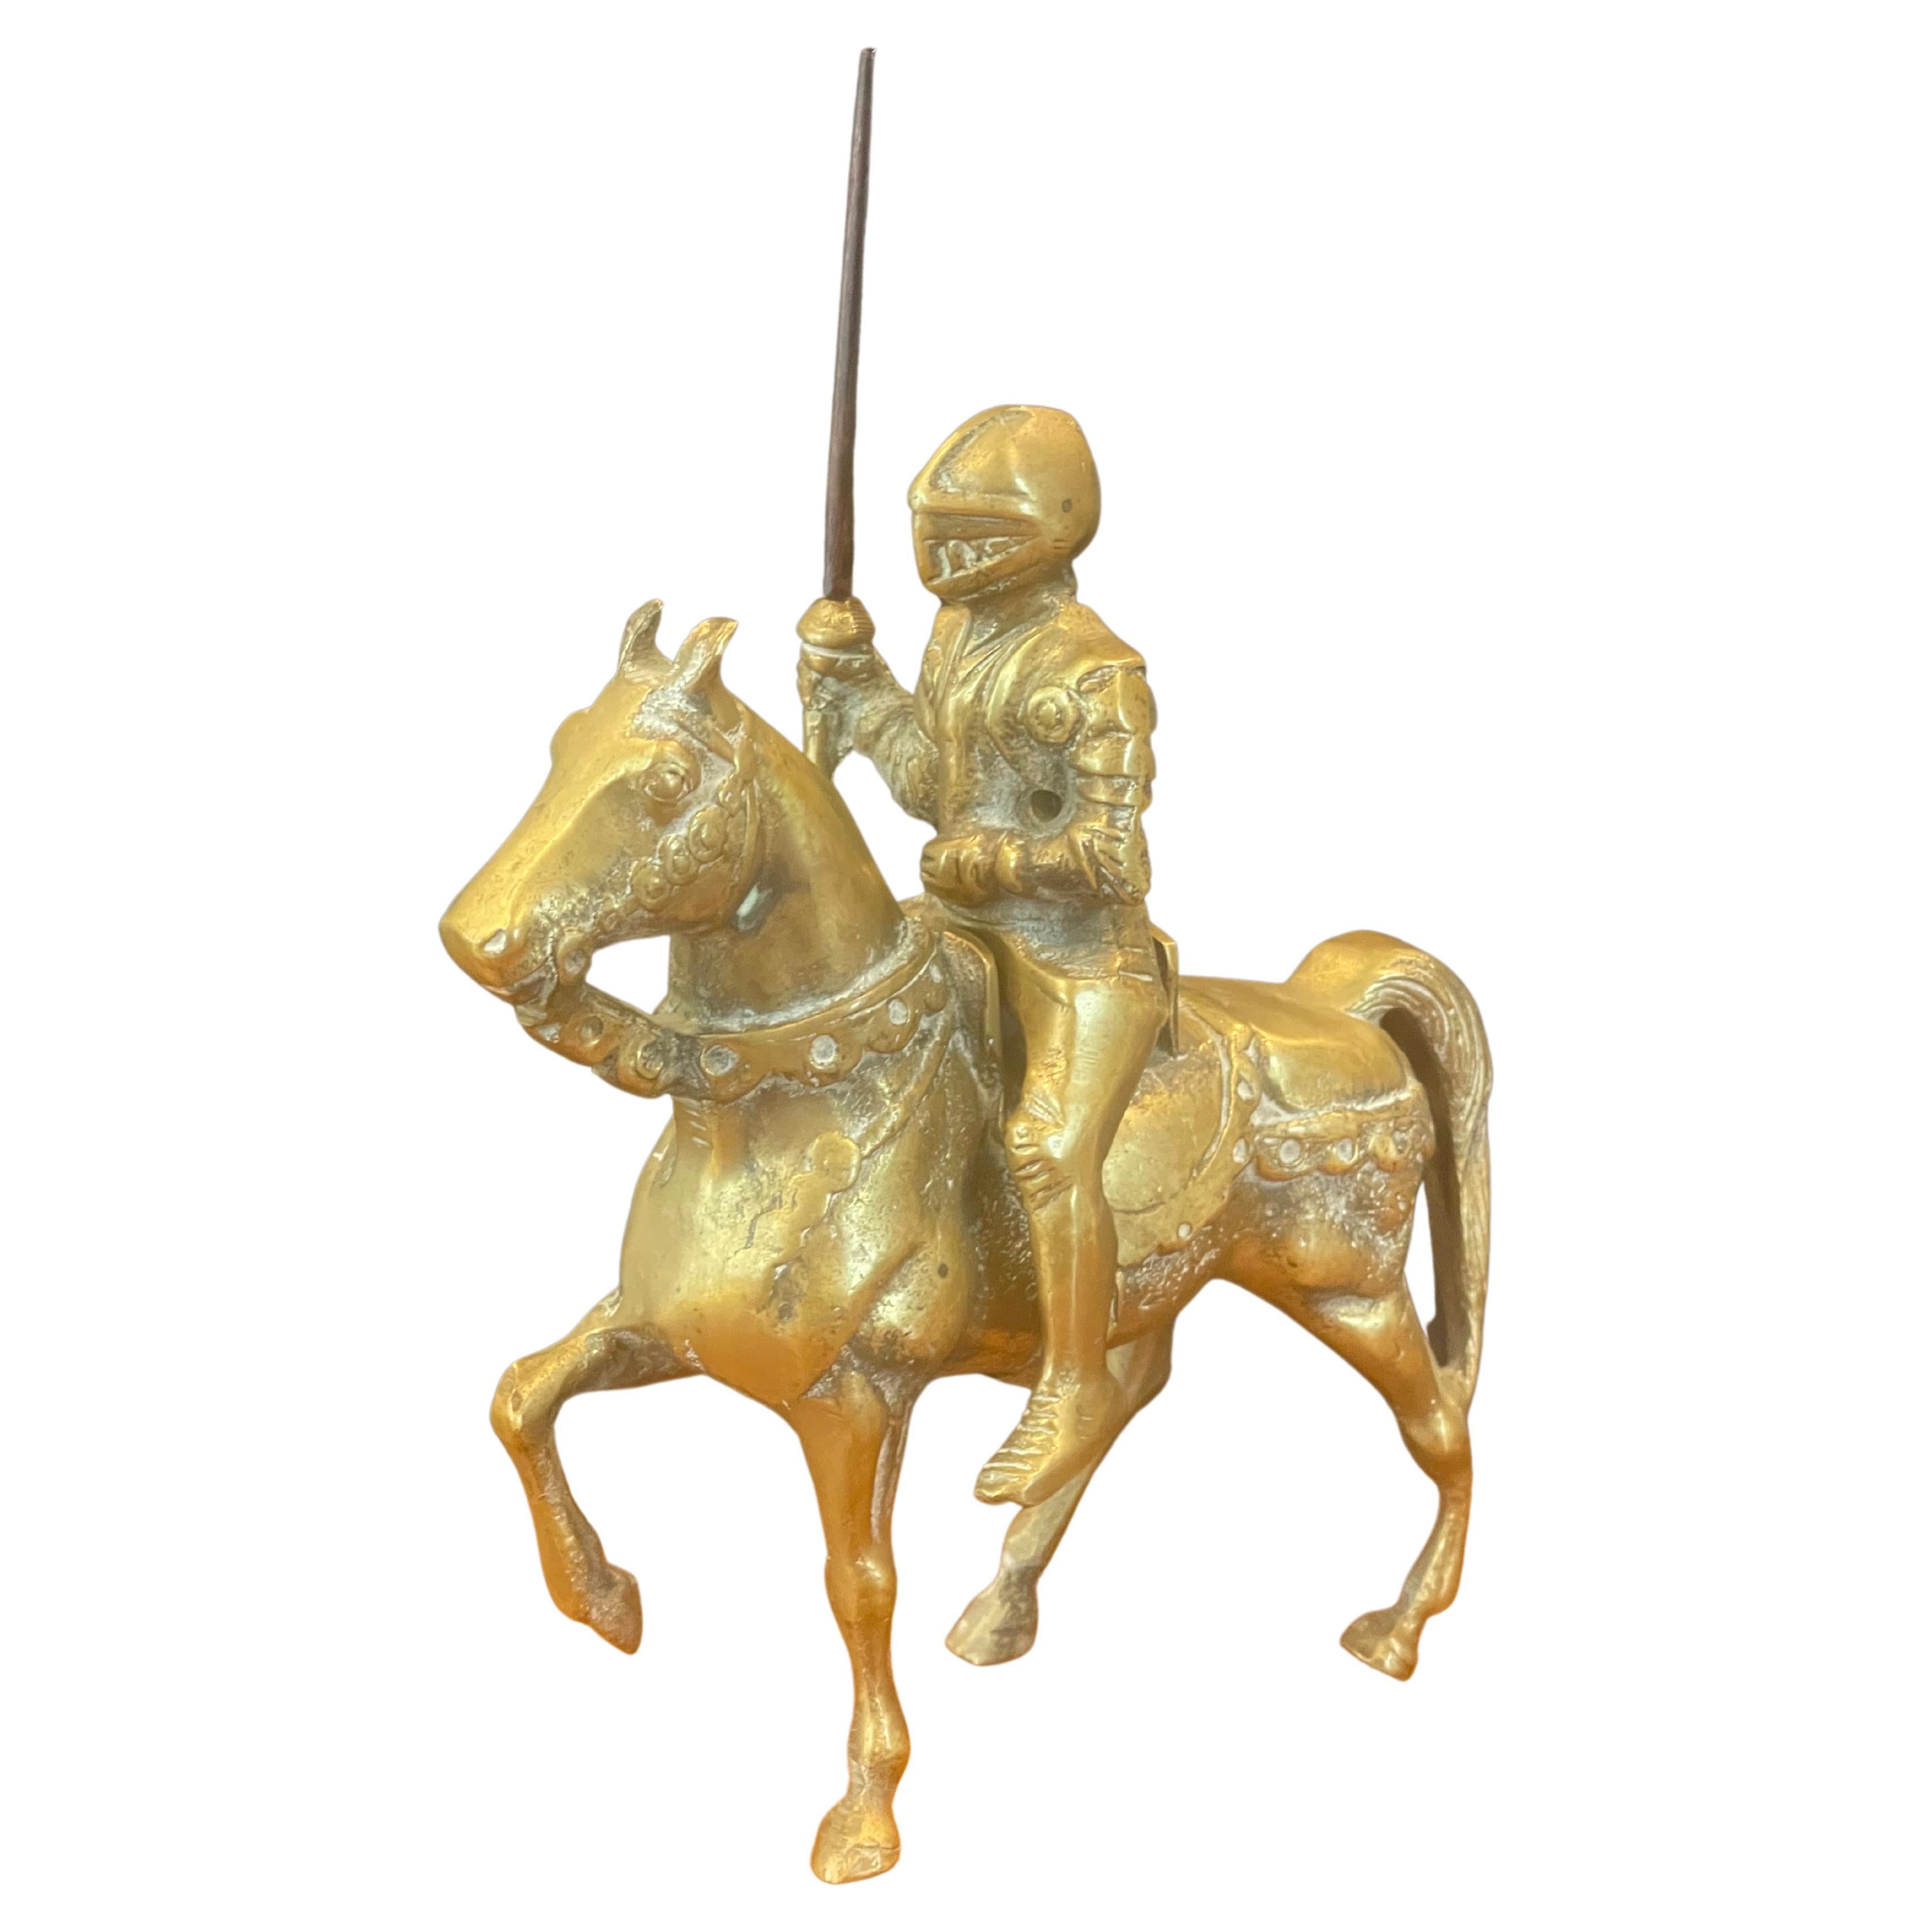 Eine sehr coole und gut detaillierte mittelalterliche gepanzerte Ritter auf Pferd Skulptur aus massivem Messingguss, circa 1970er Jahre. Das Stück ist in sehr gutem Vintage-Zustand und misst 7,25 